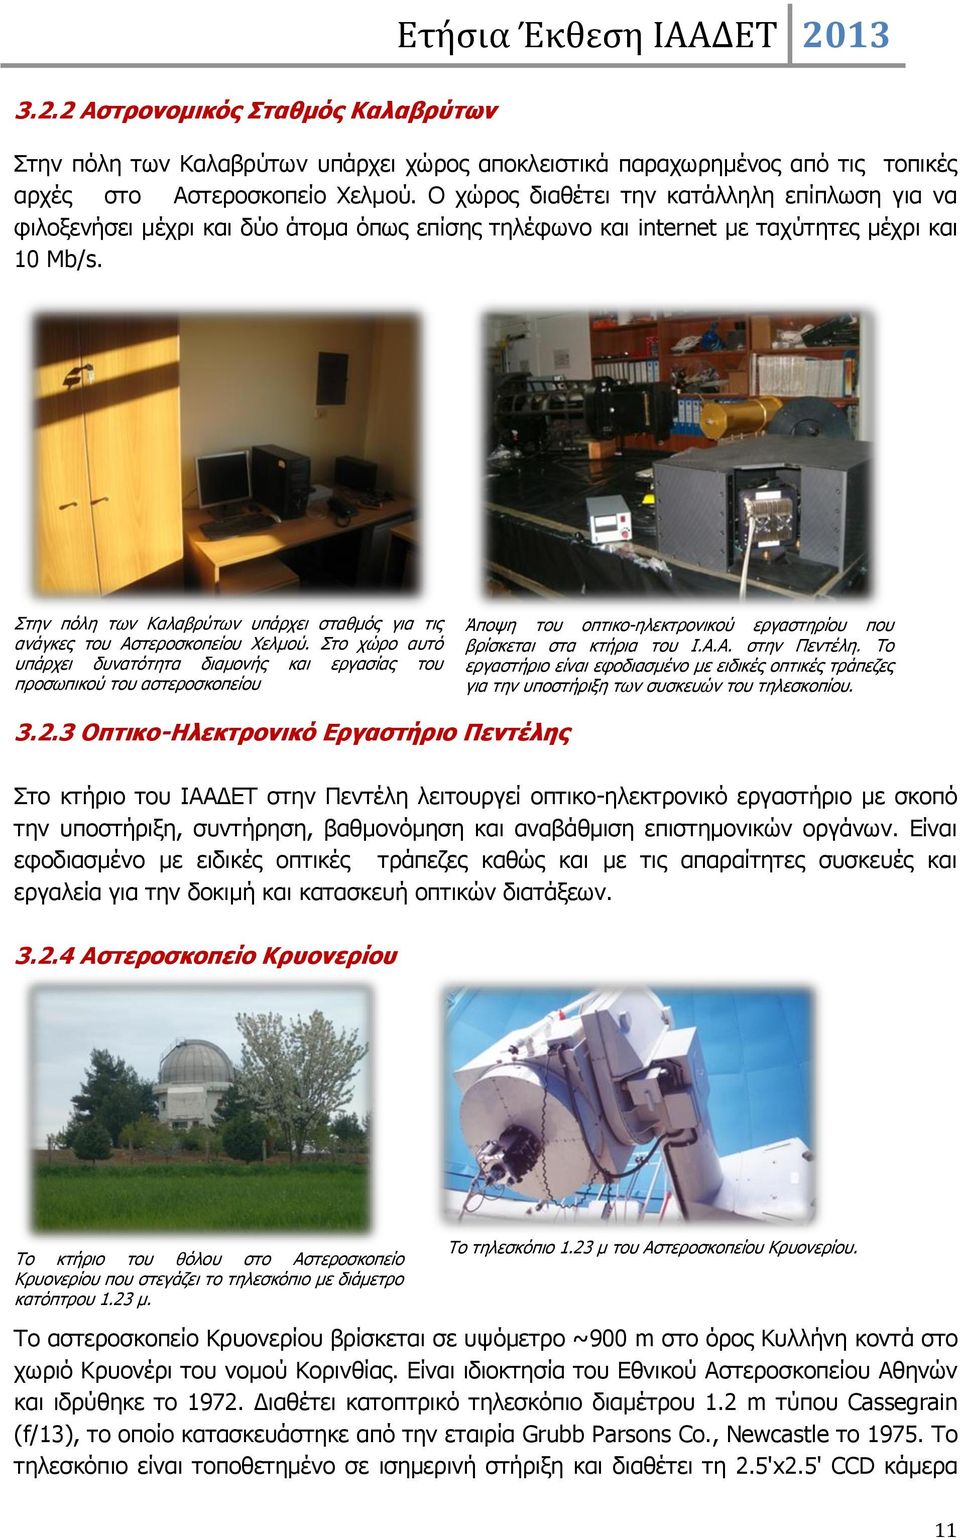 Στην πόλη των Καλαβρύτων υπάρχει σταθμός για τις ανάγκες του Αστεροσκοπείου Χελμού. Στο χώρο αυτό υπάρχει δυνατότητα διαμονής και εργασίας του προσωπικού του αστεροσκοπείου 3.2.